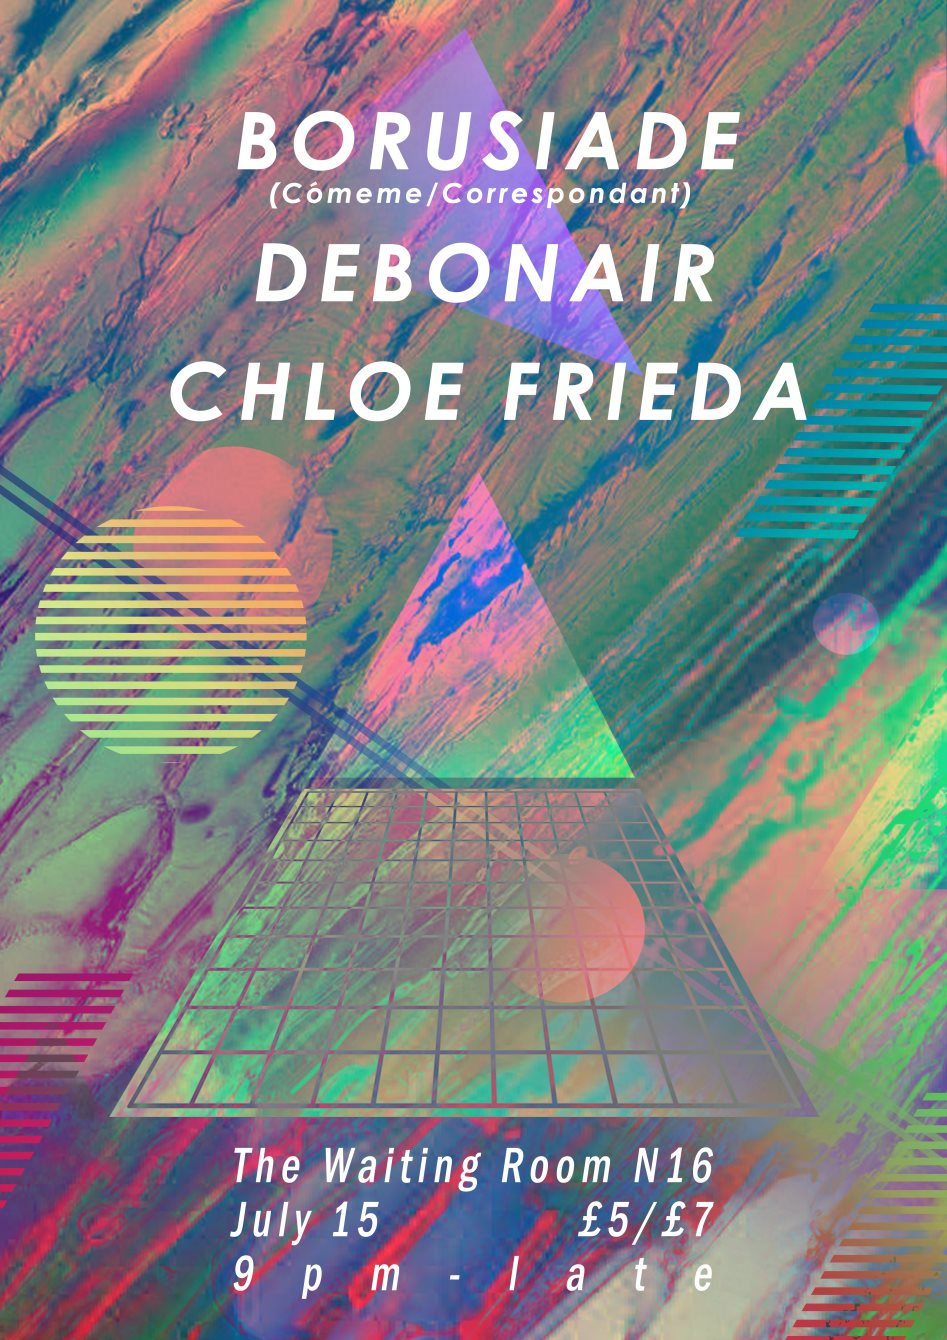 Borusiade, Chloe Frieda, Debonair - Flyer front